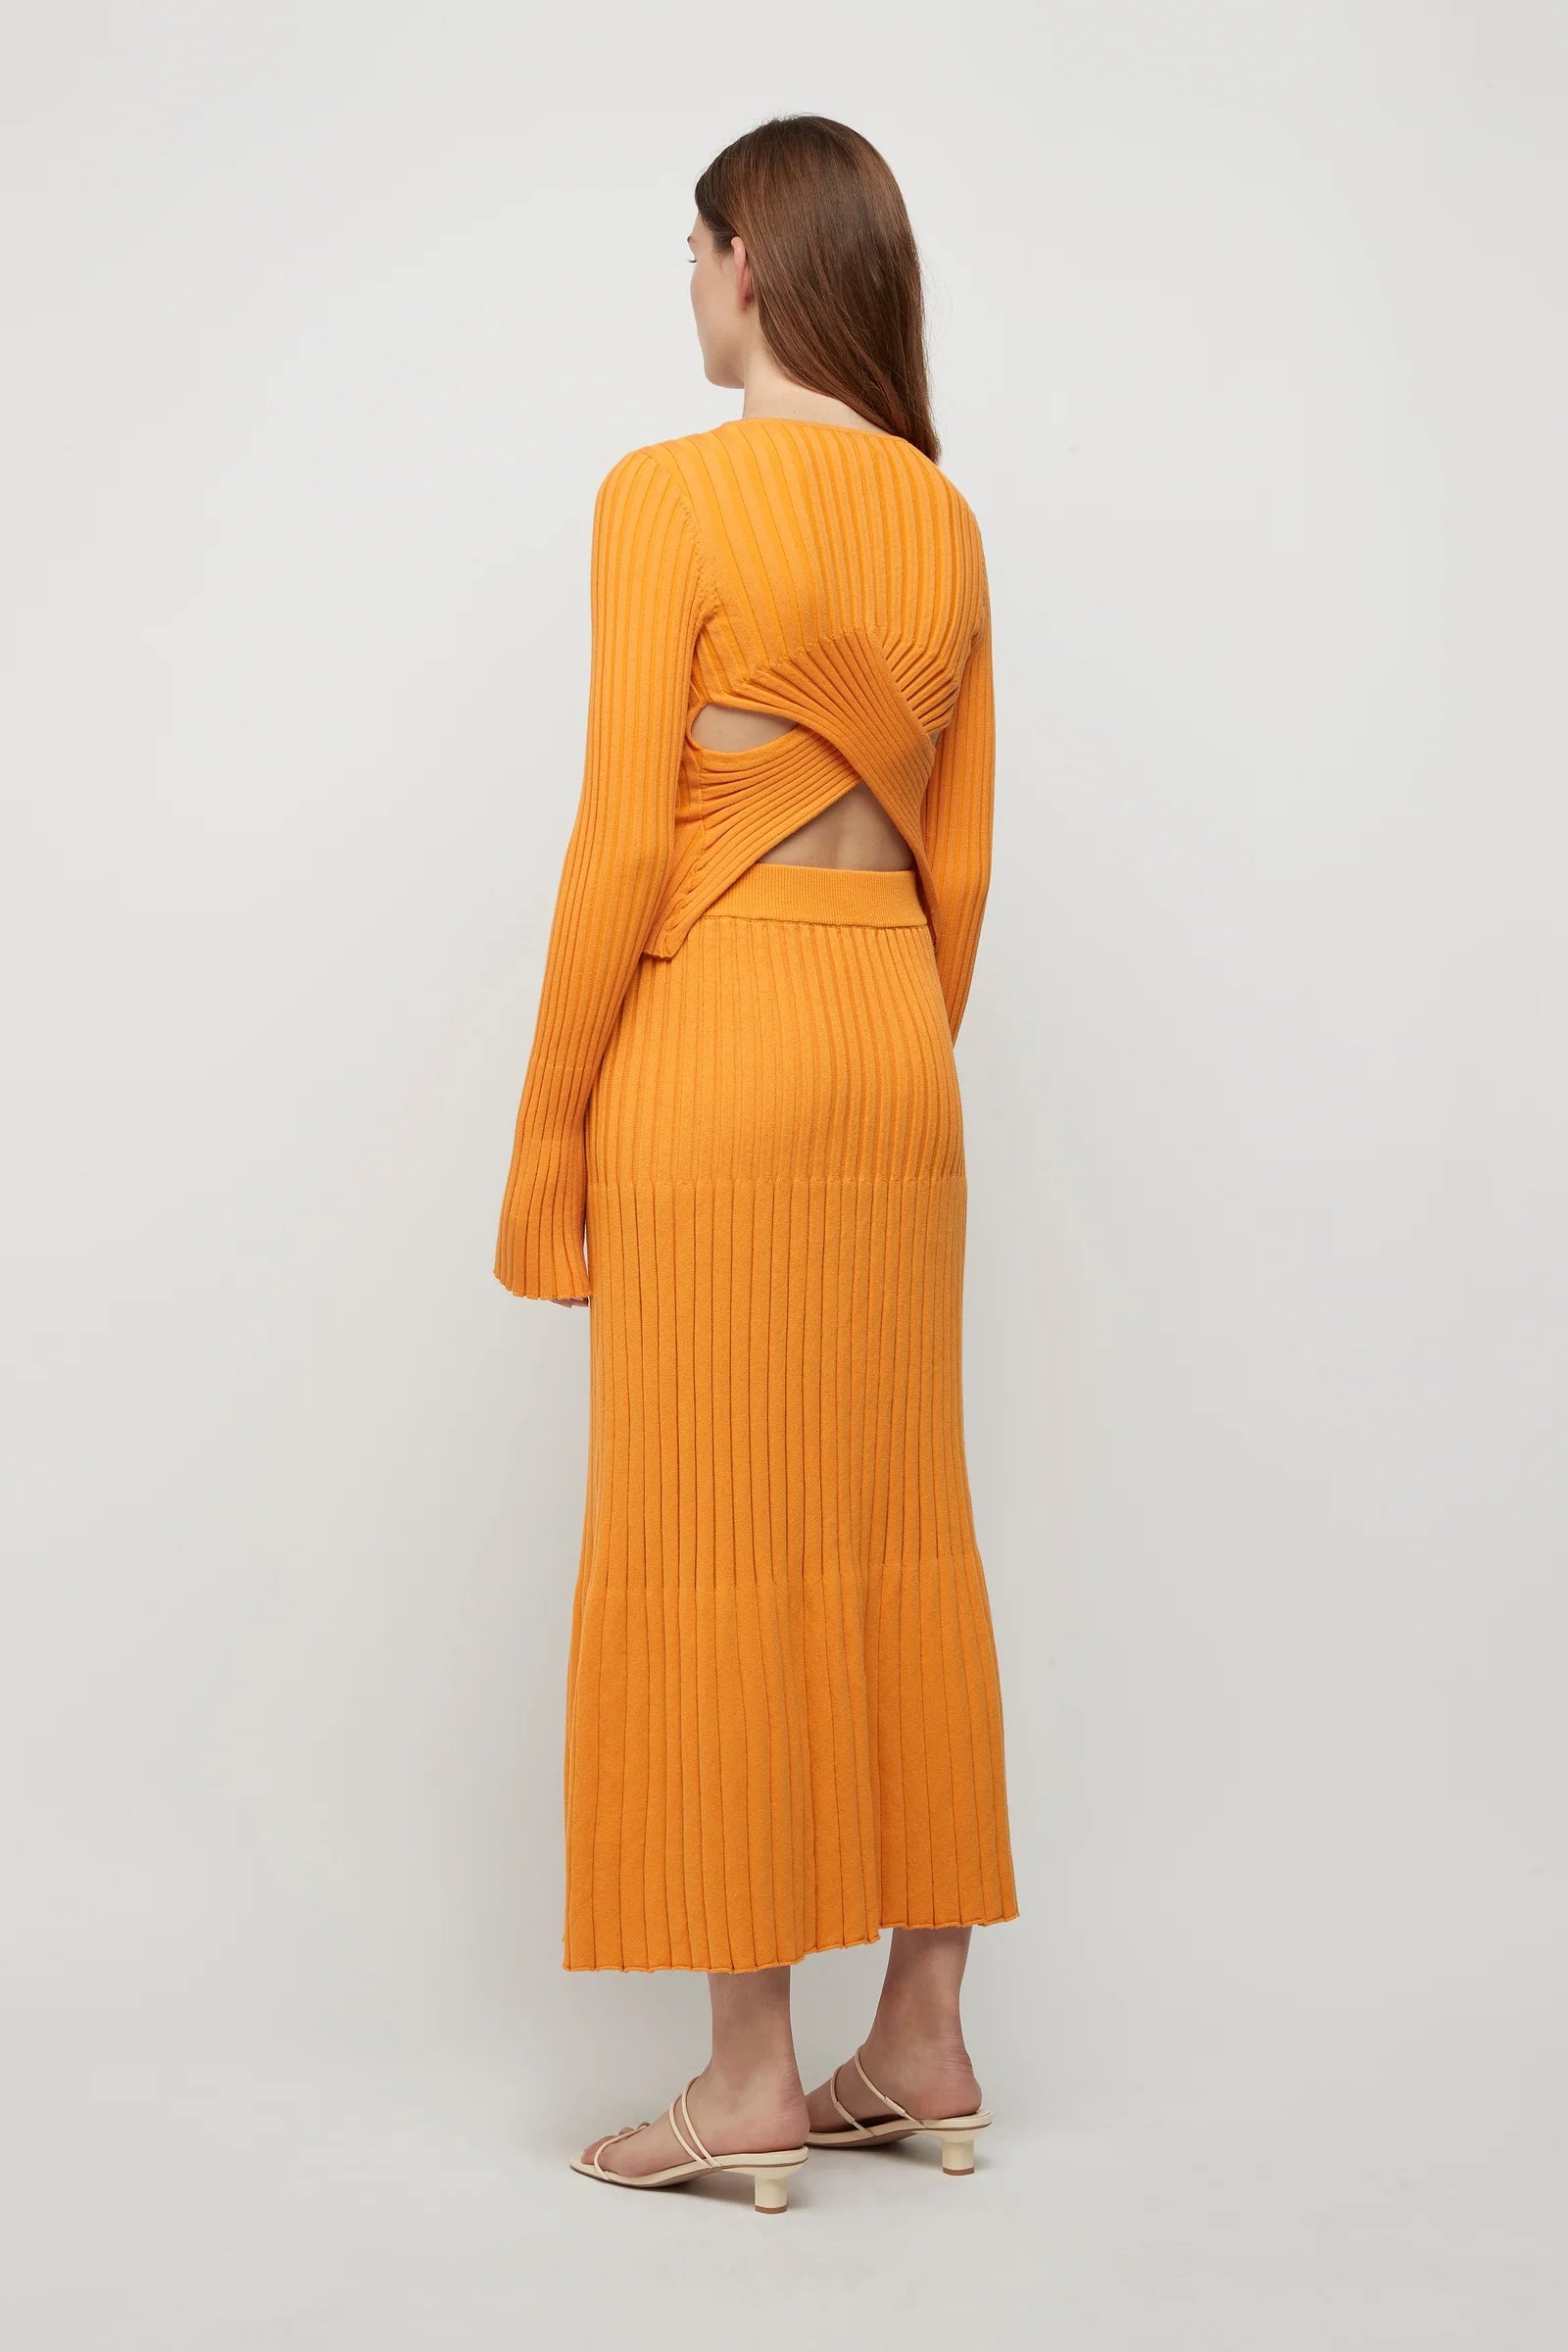 Nebula Knit Skirt in Tangerine